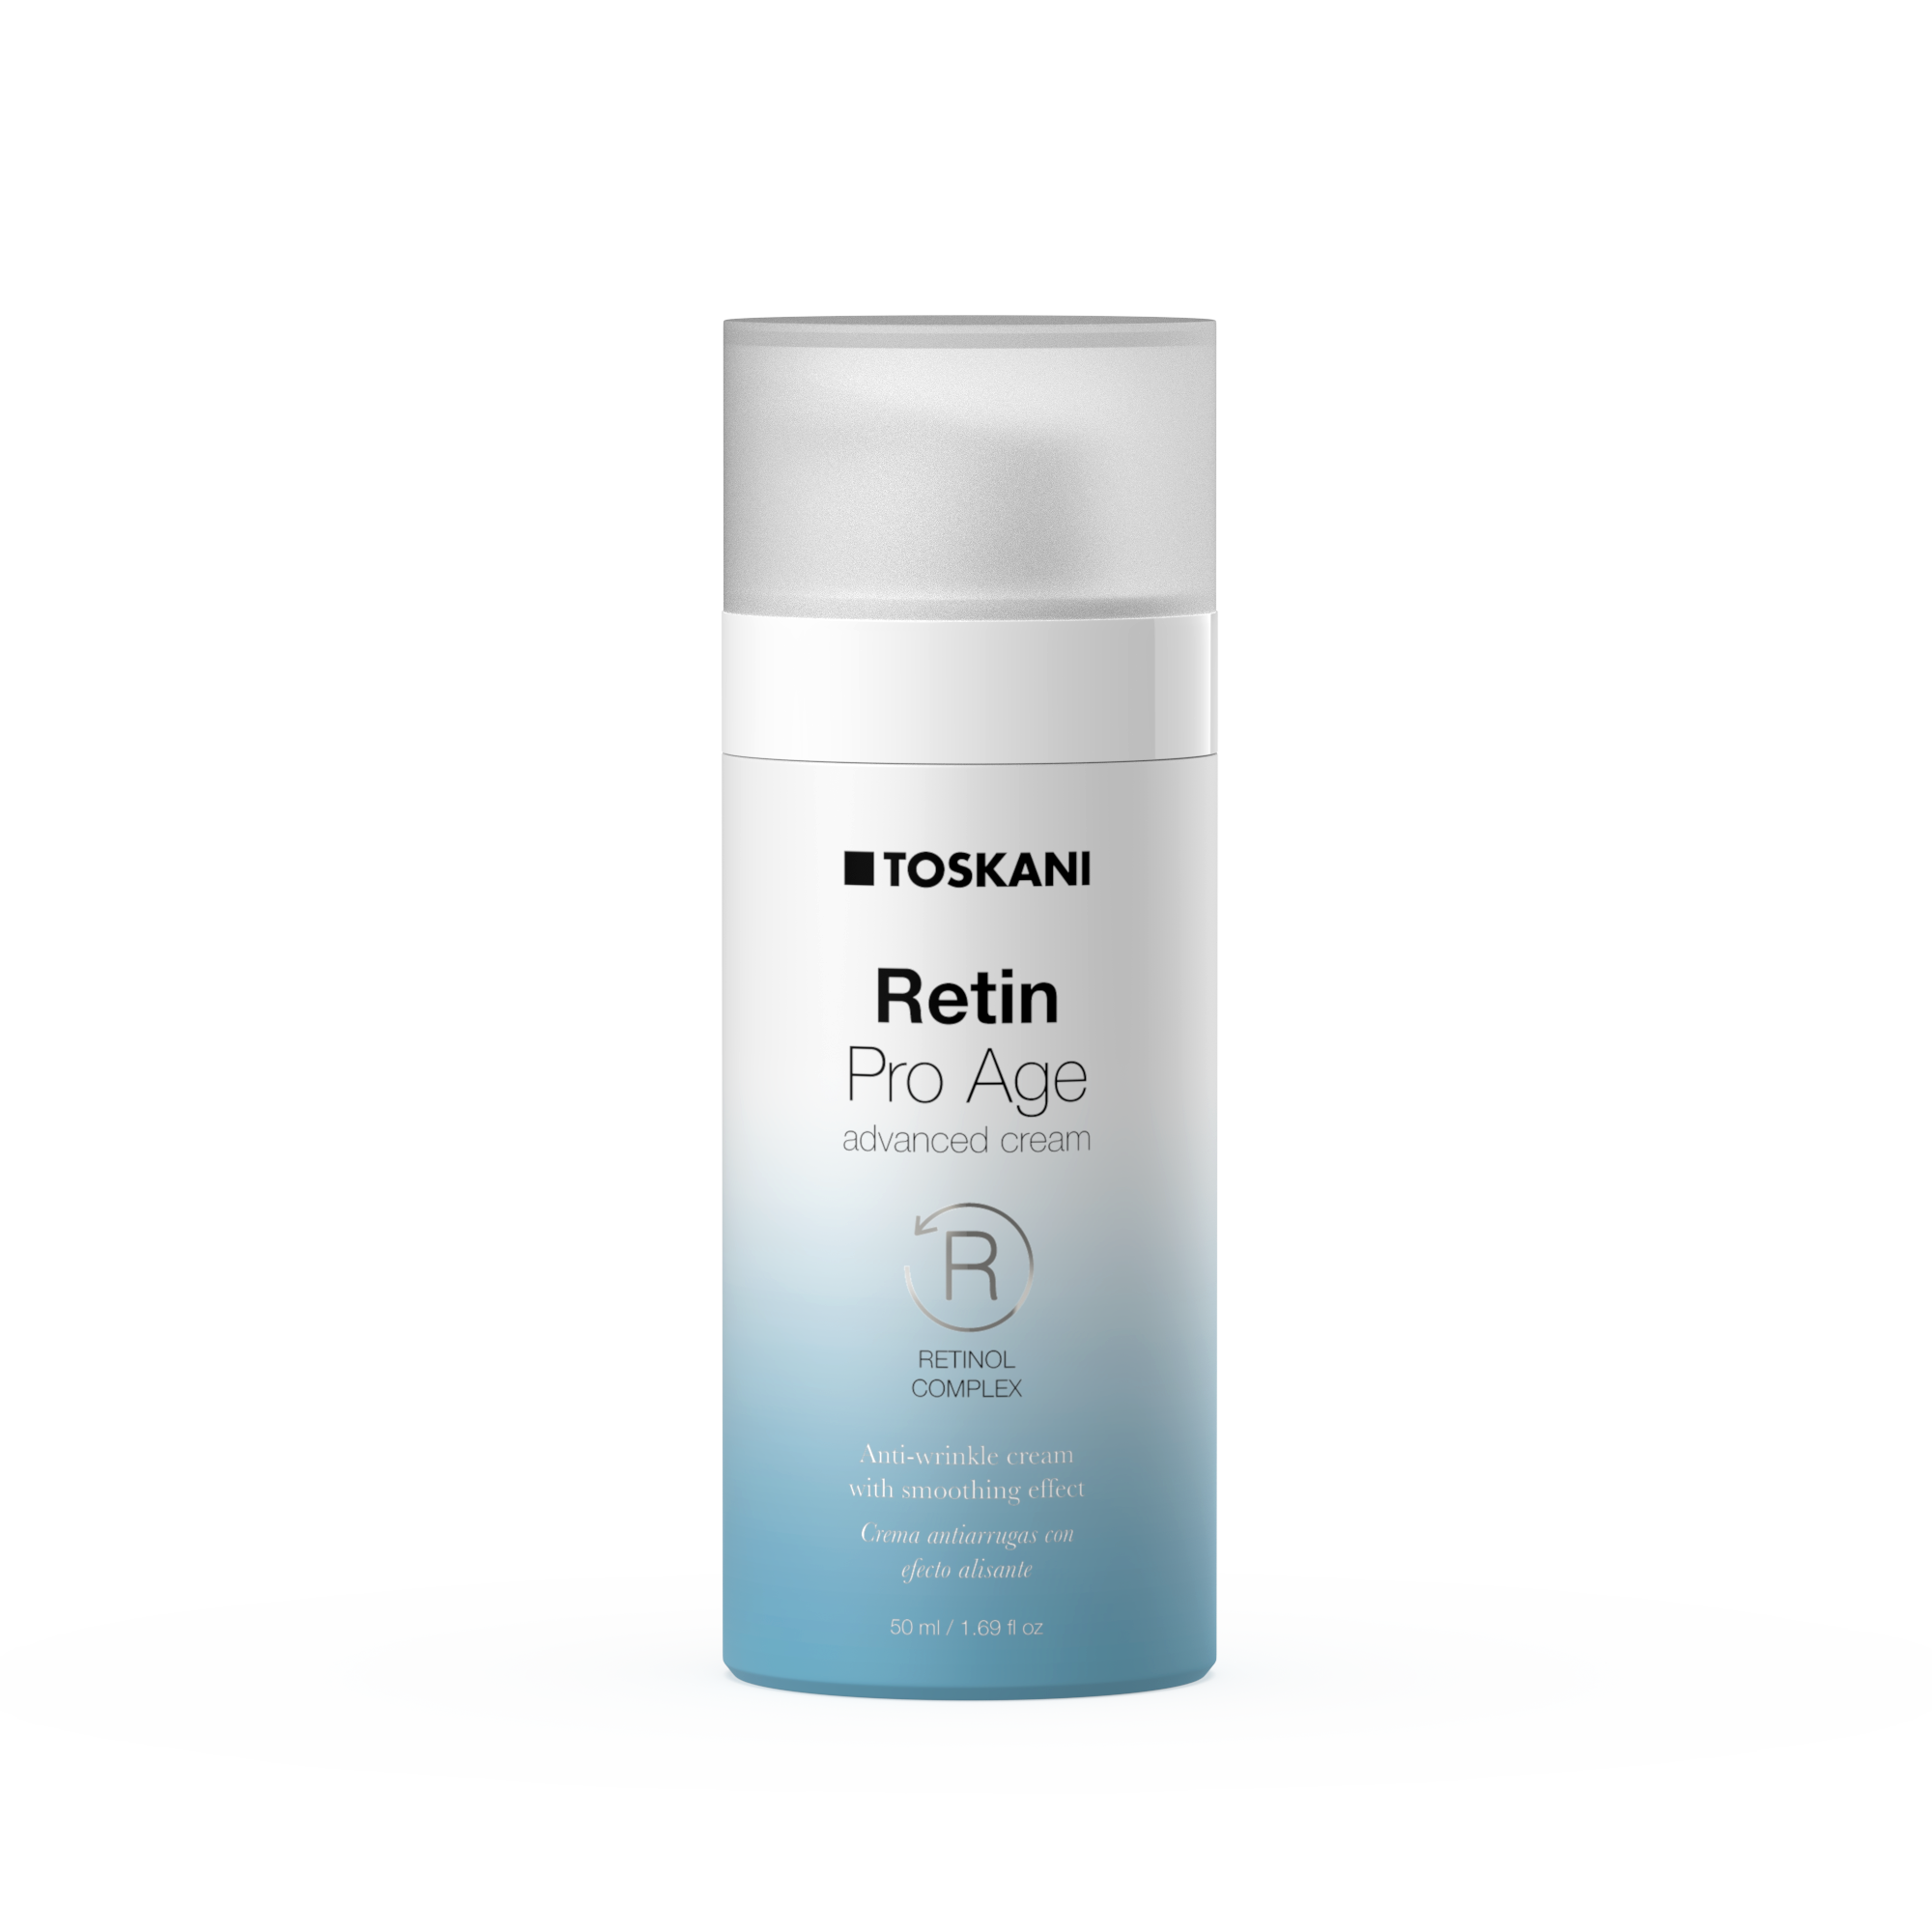 Retin Pro Age advanced cream